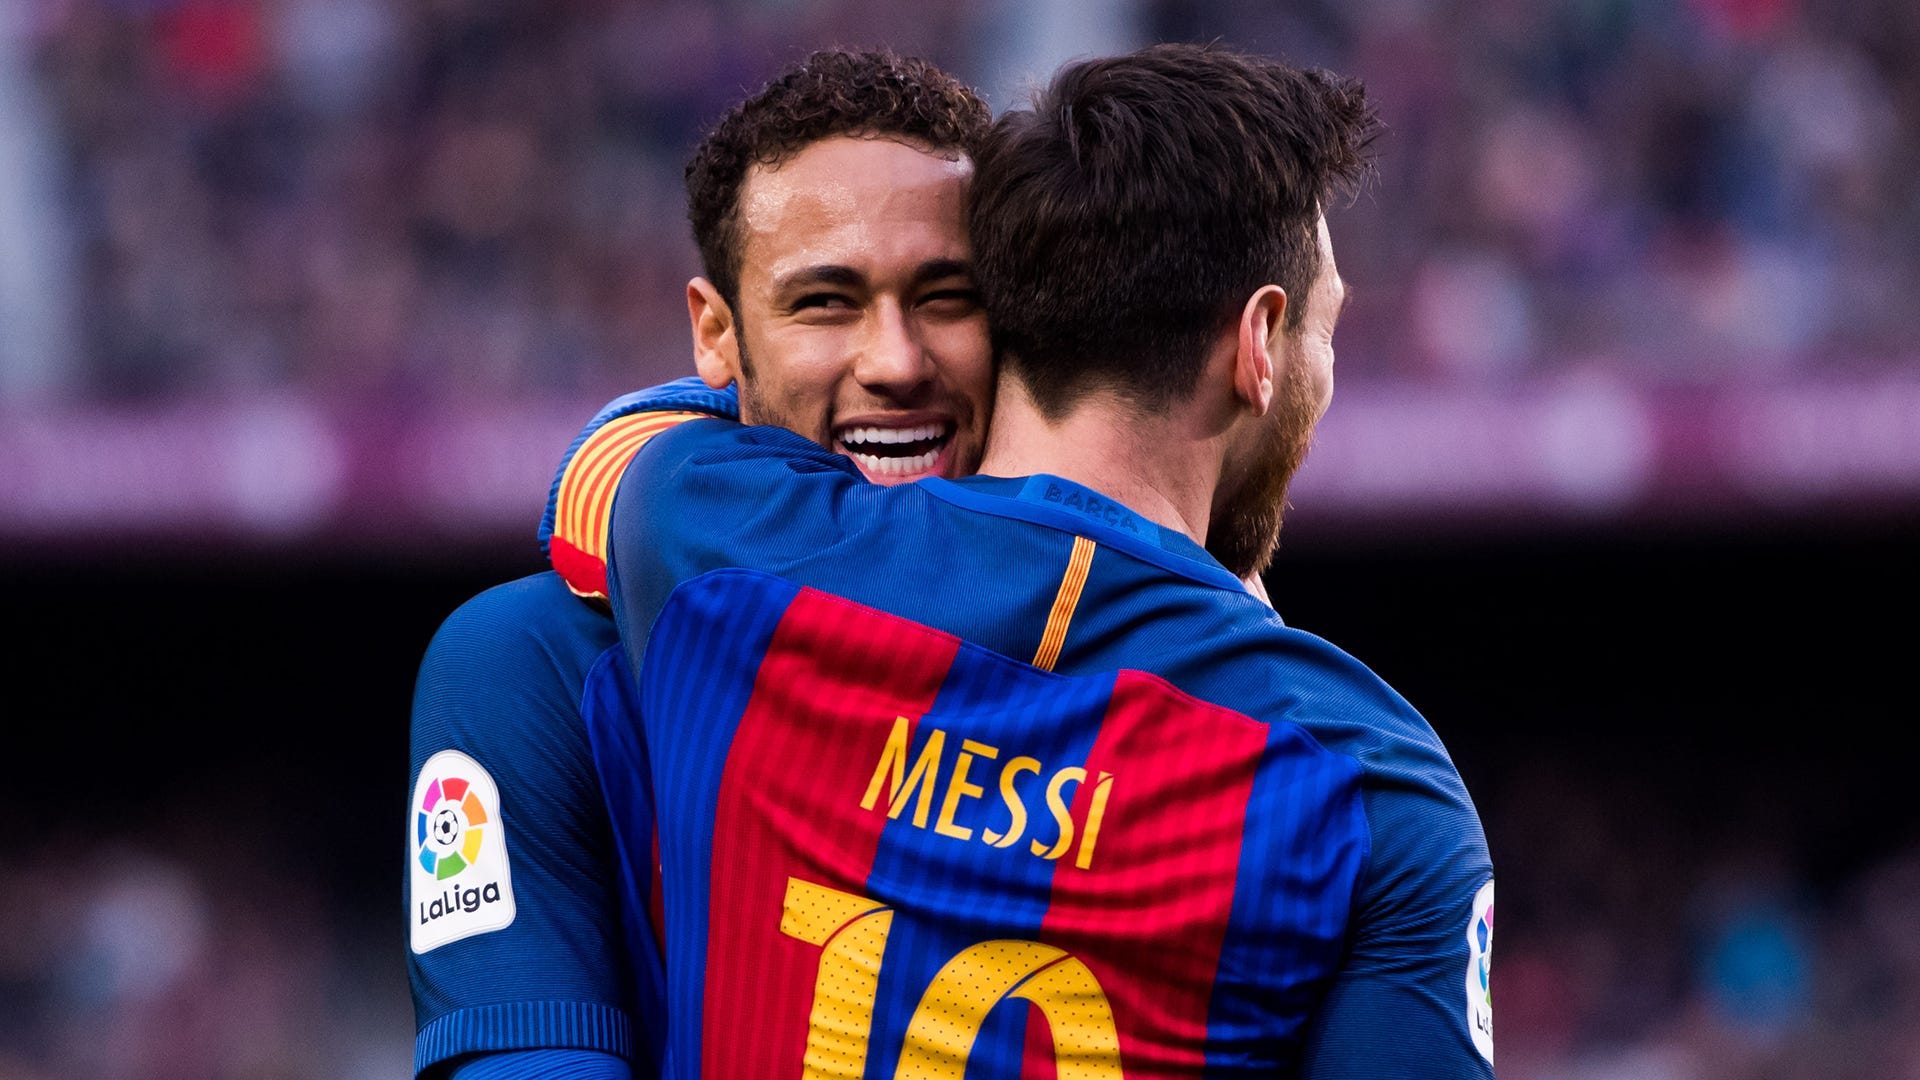 Messi, Neymar và Barca - ba nguyên tố tuyệt vời tạo nên một đội bóng tuyệt vời! Hãy xem hình ảnh của họ trên mặt trận sân cỏ và tận hưởng cảm giác của cuộc đua bóng đá mãnh liệt!